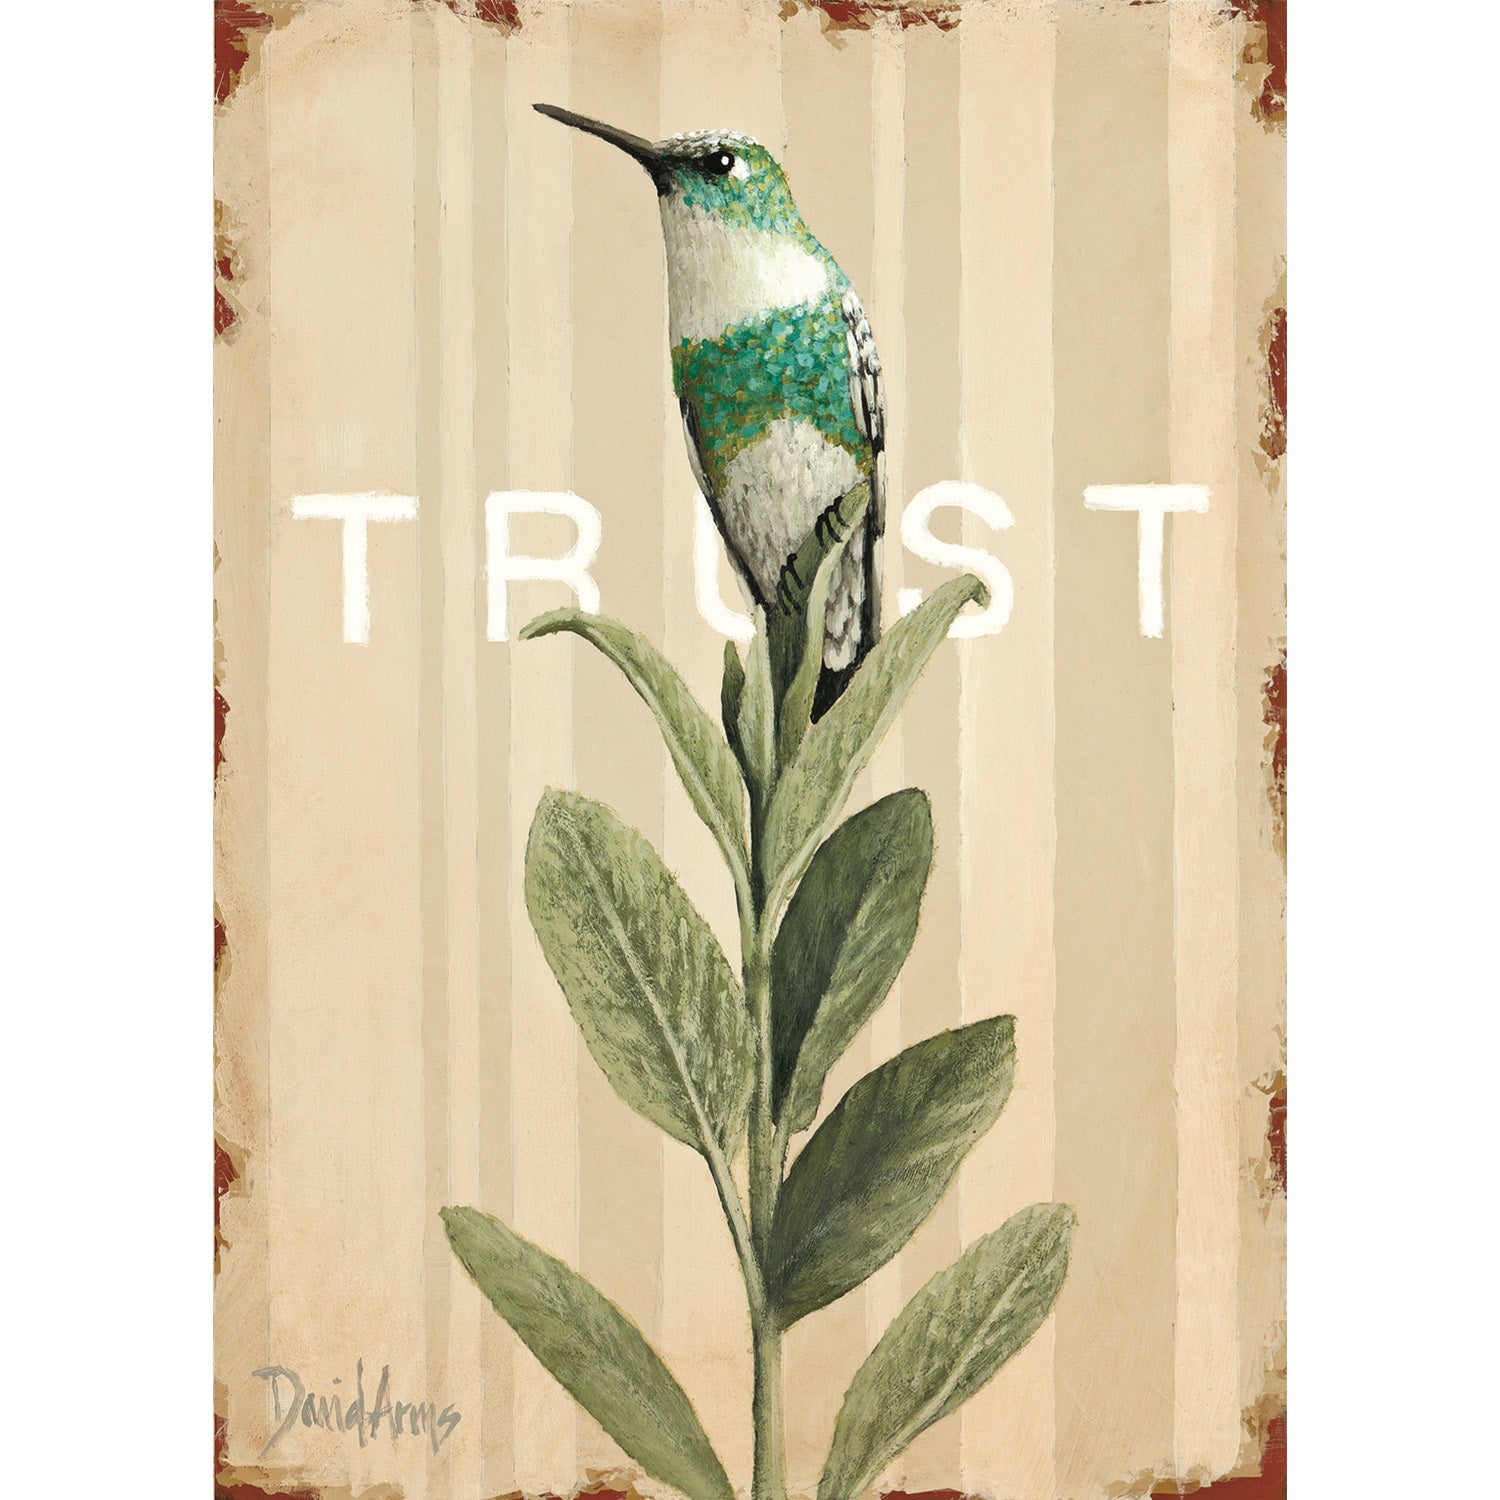 Trust (Sage) Card